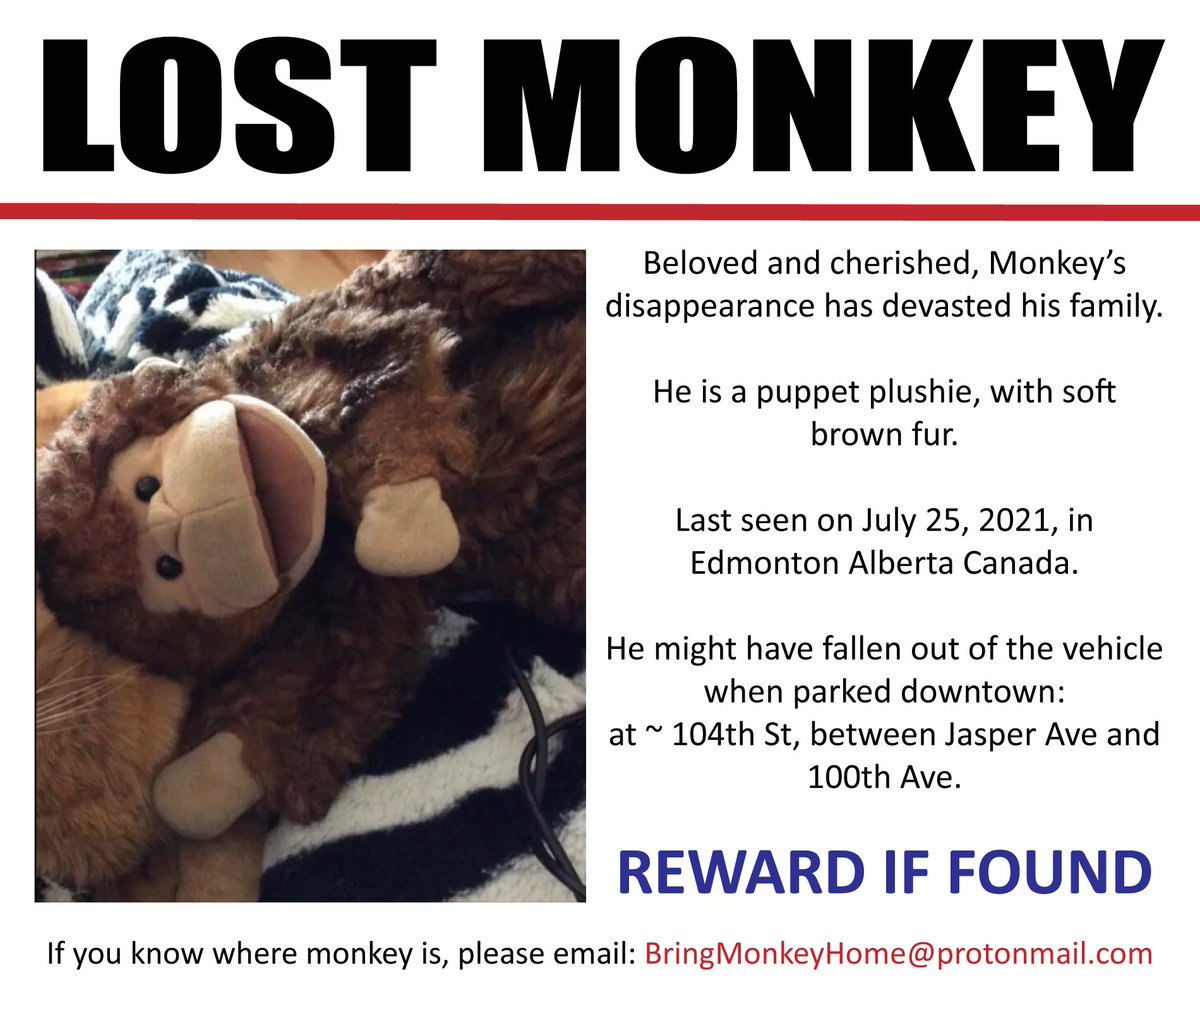 Pweez share and halp #BringMonkeyHome.

#YEG #MissingMonkey